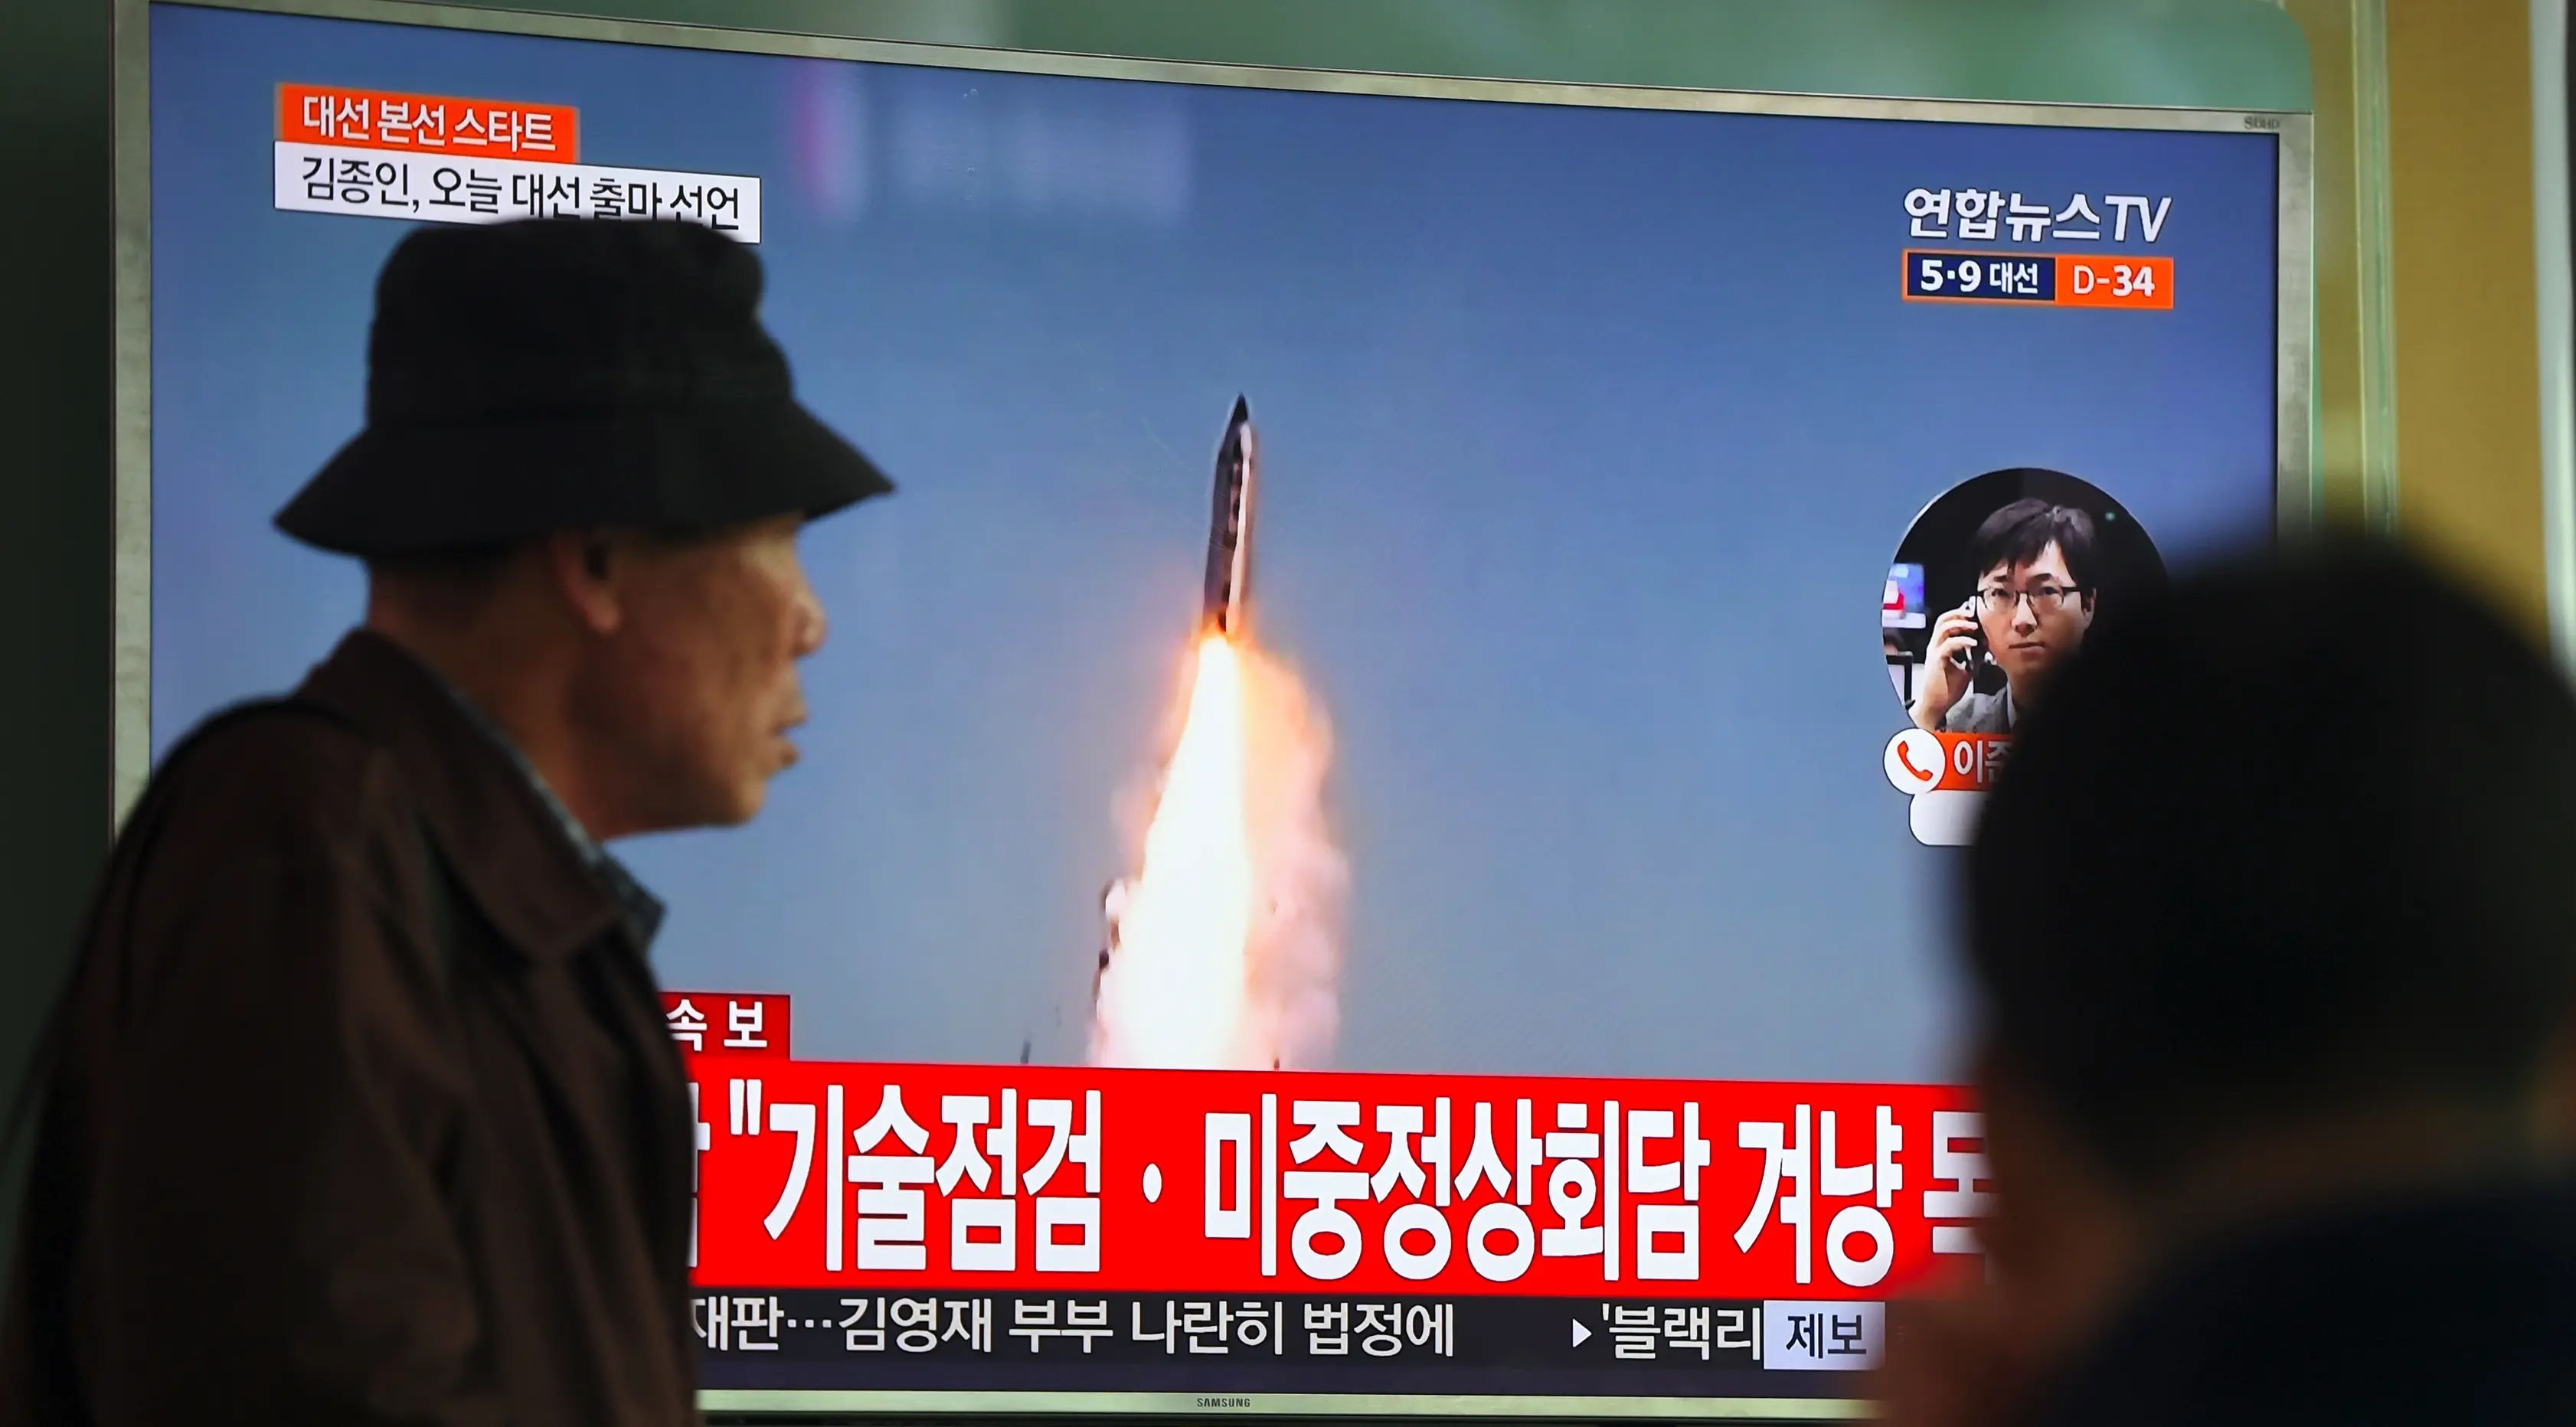 Seorang pria melewati layar televisi yang menyiarkan berita peluncuran rudal oleh Korea Utara (Korut), di sebuah stasiun kereta di Seoul, Korea Selatan, Selasa (5/4). Rudal itu ditembakkan dari wilayah timur Korut ke arah Laut Jepang. (JUNG Yeon-Je/AFP)